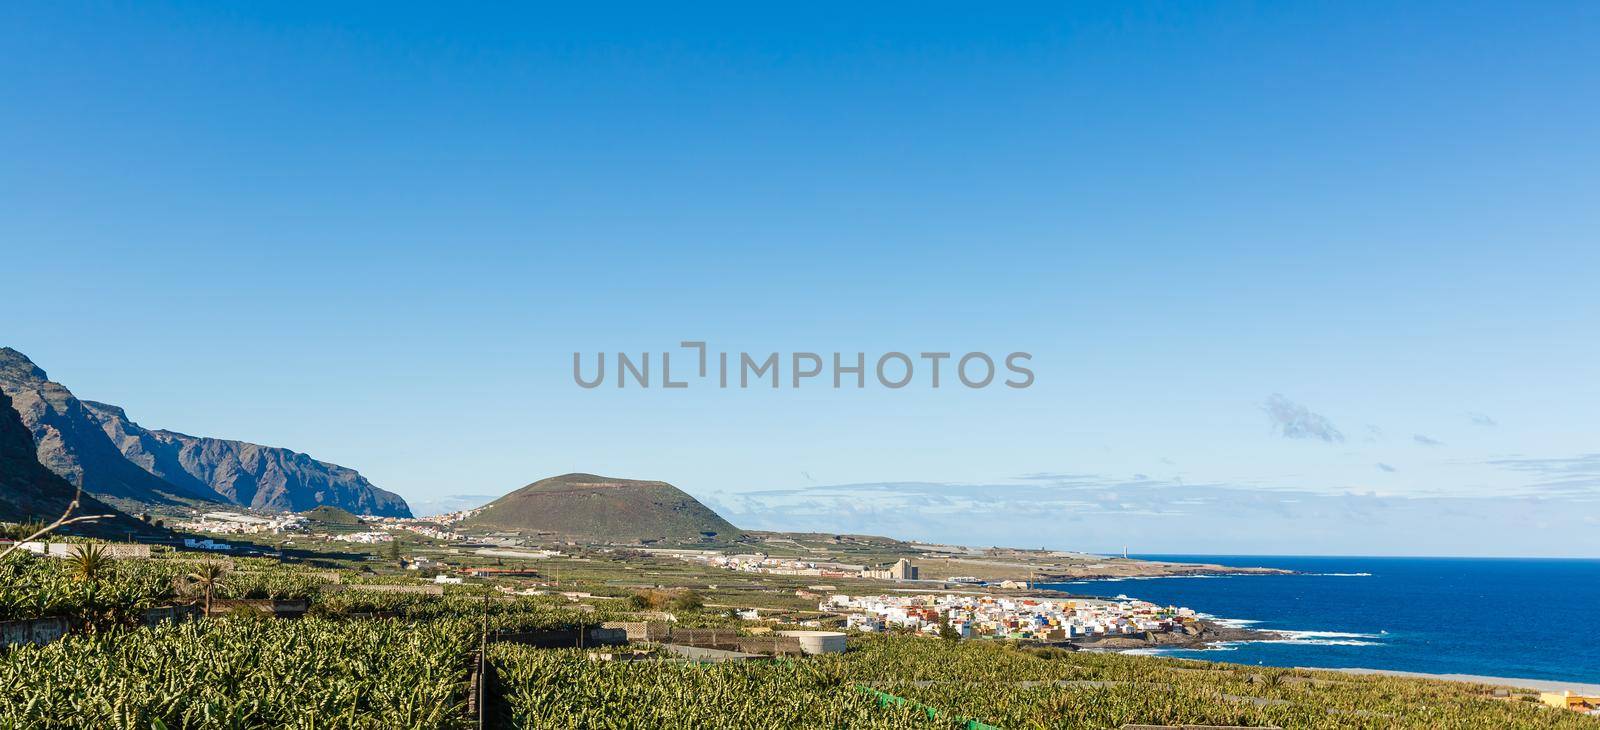 Aerial view of Garachico village on the coast of Atlantic ocean in Tenerife island of Spain